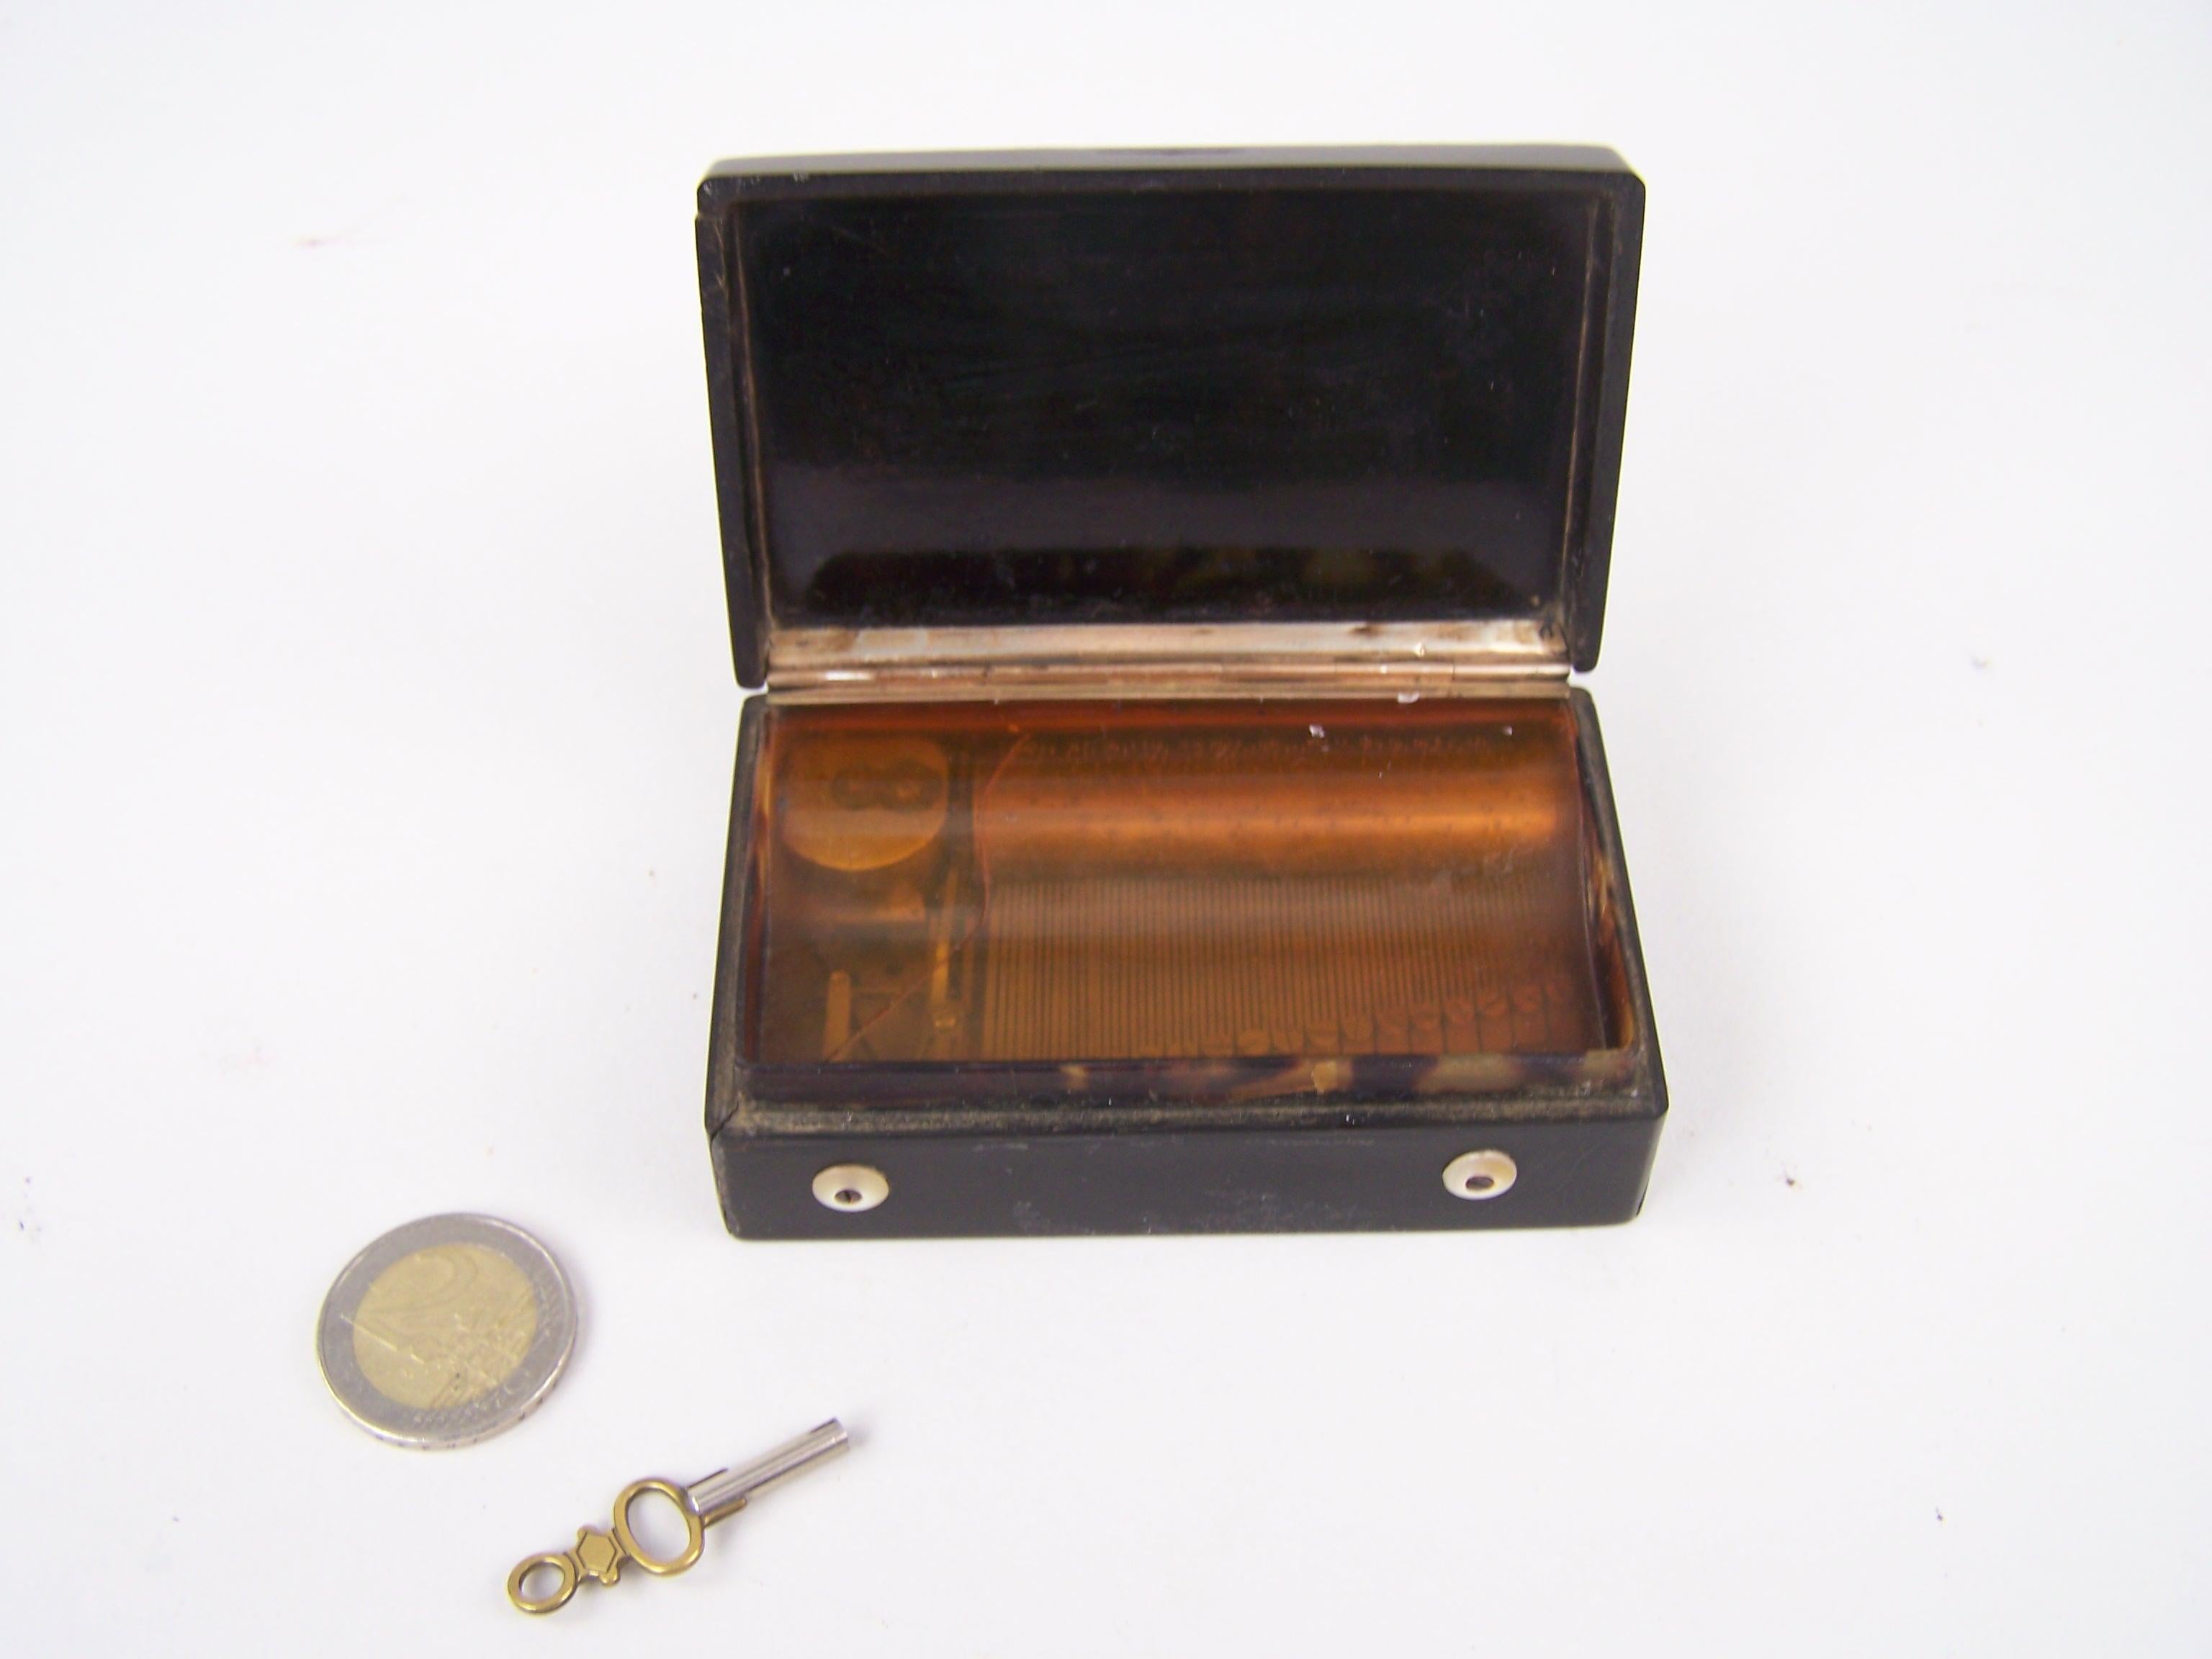 Schnupftabakdose mit Musik, hergestellt in der Schweiz in der ersten Hälfte des 19. Jahrhunderts.

Diese seltene Schnupftabakdose spielt 2 Melodien, auf einem Sektionskamm. Der Kamm besteht also aus mehreren Abschnitten mit jeweils 4 Zähnen, was